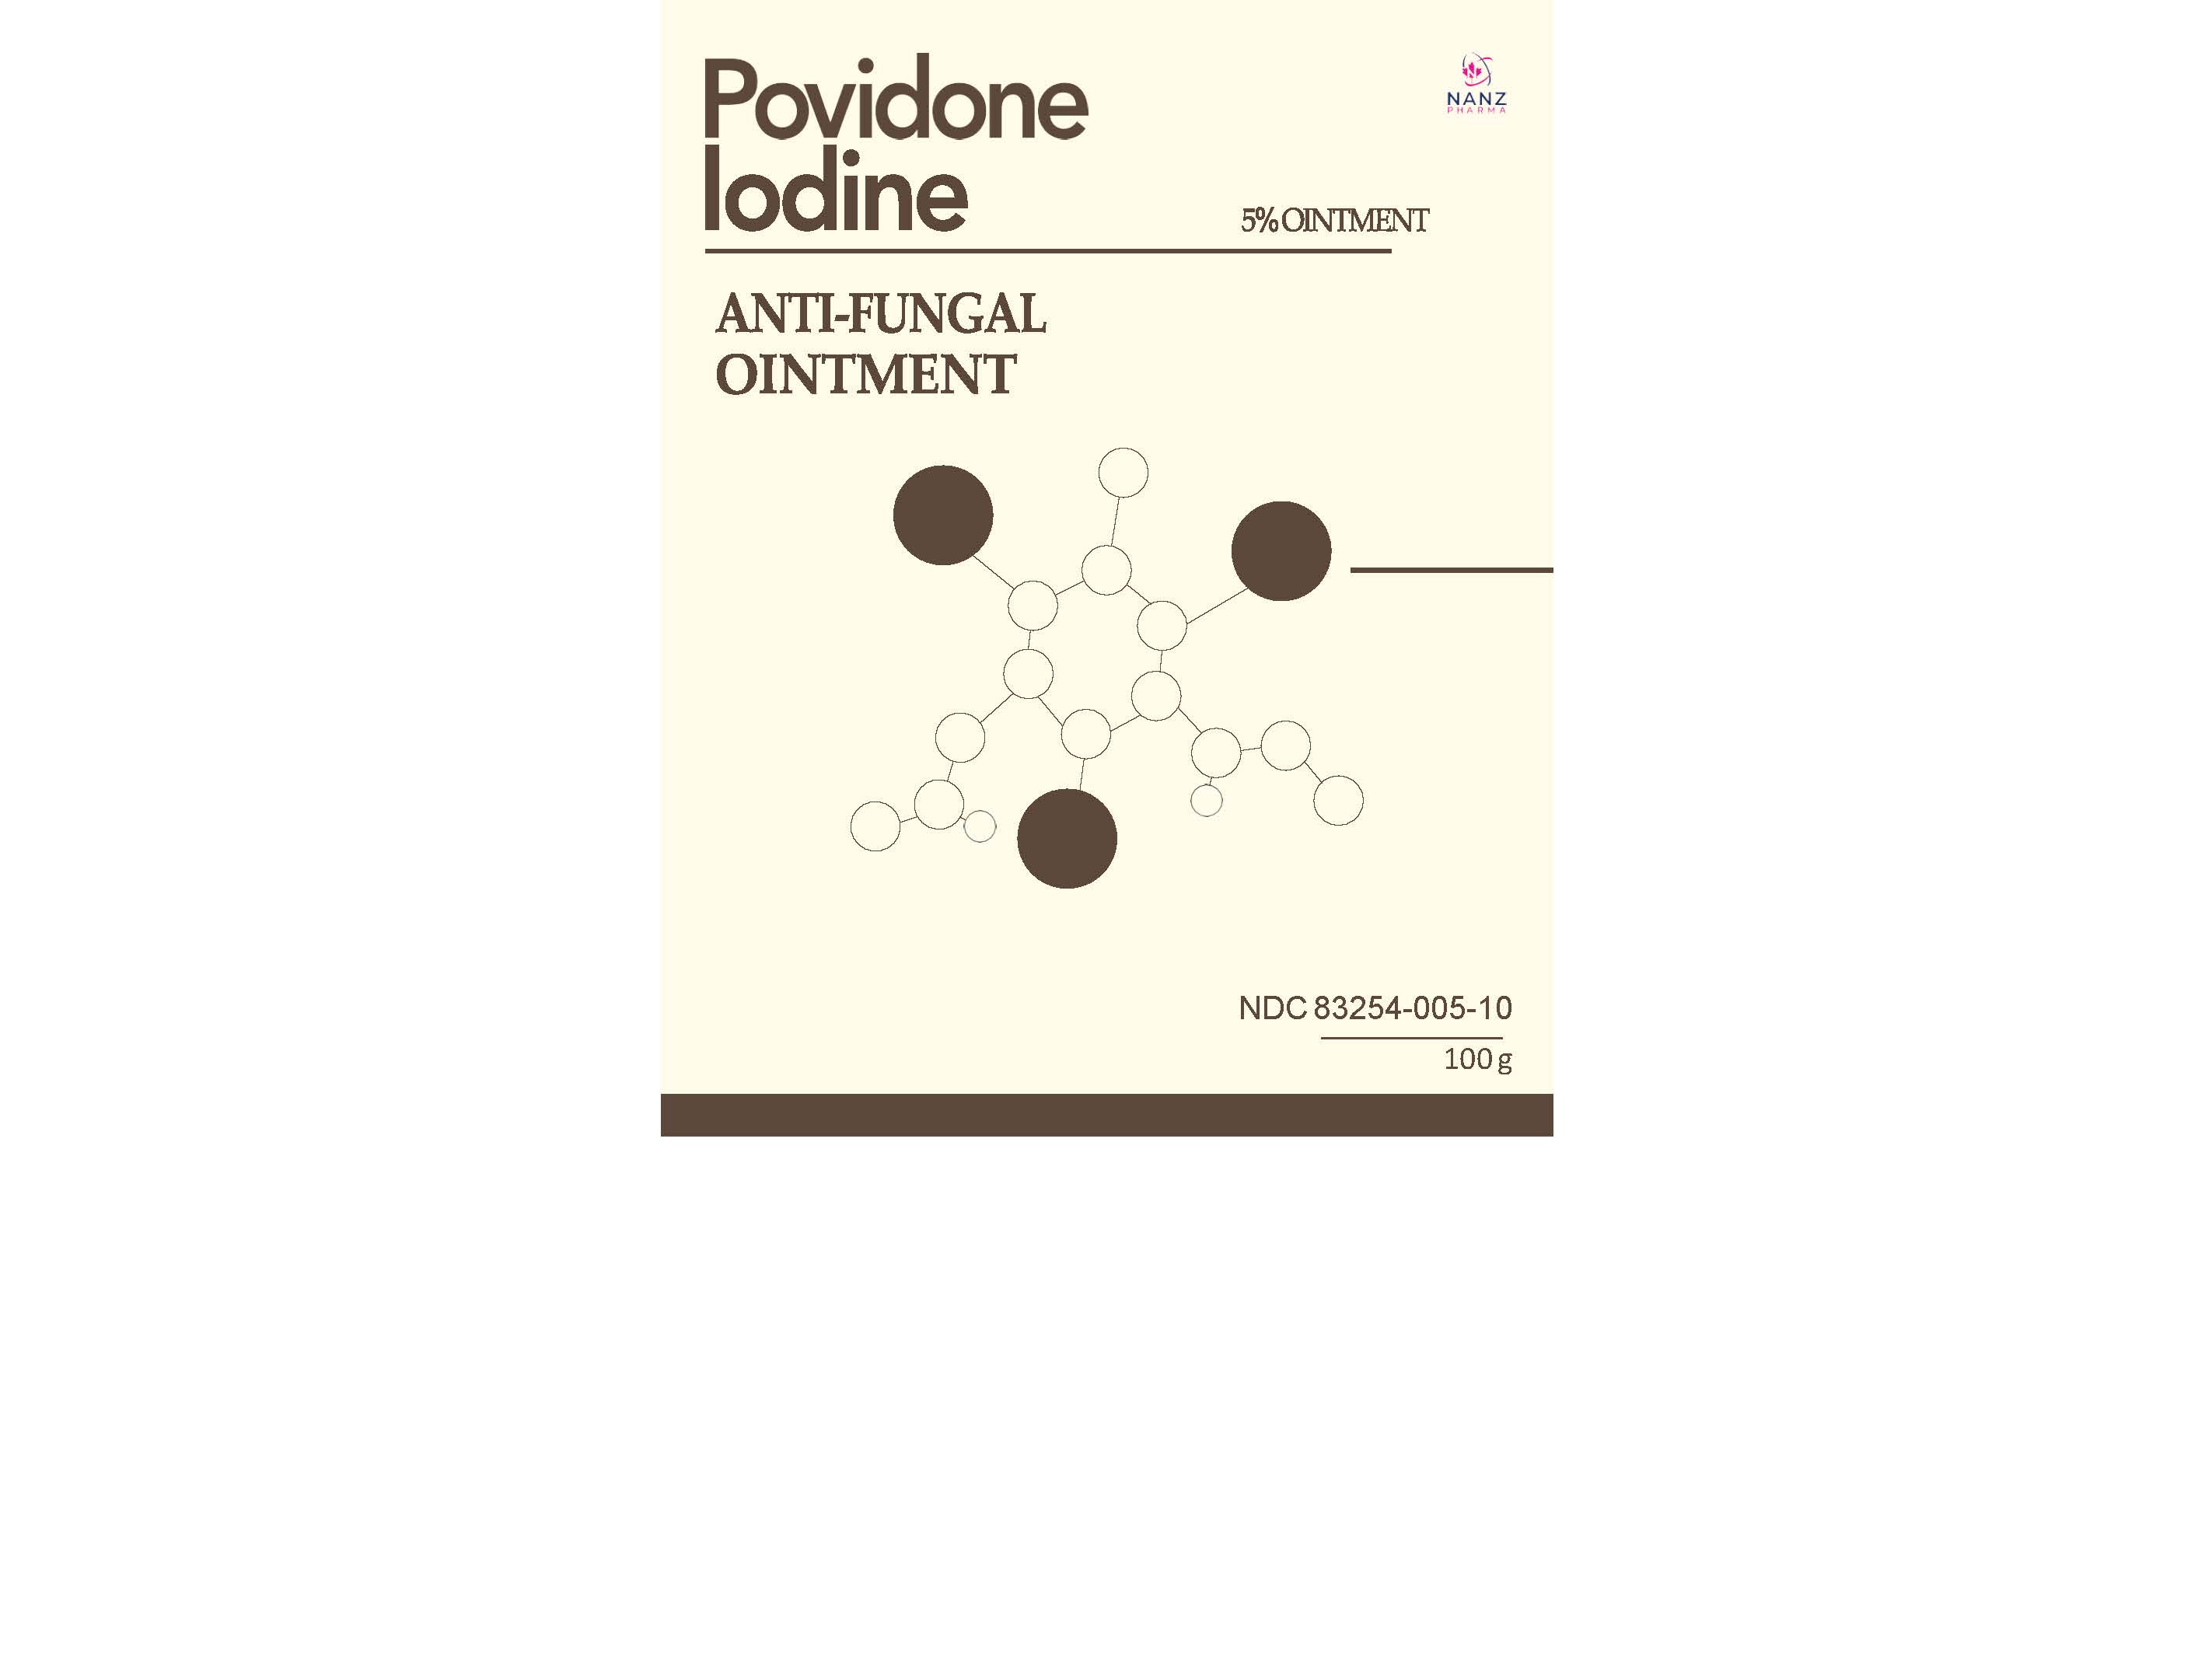 Label for all povidone iodine 5 percent